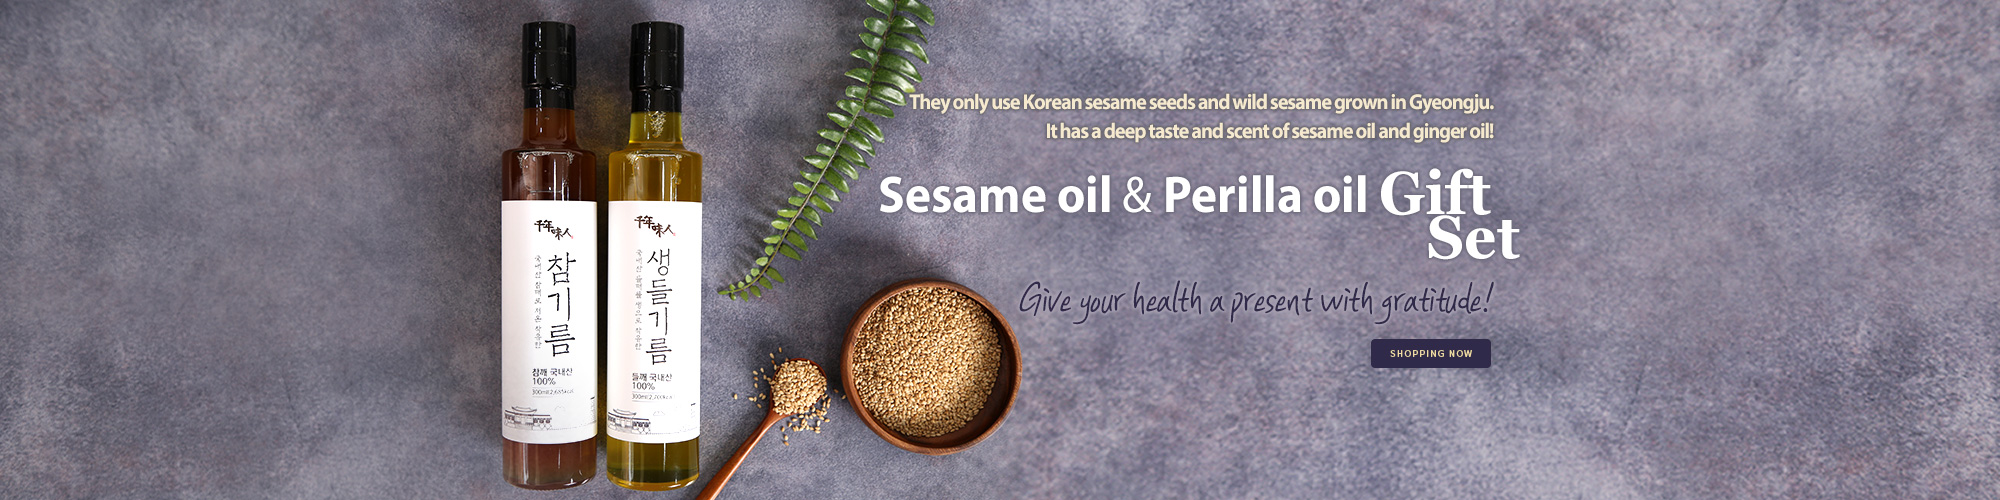 sesame oil perilla oil